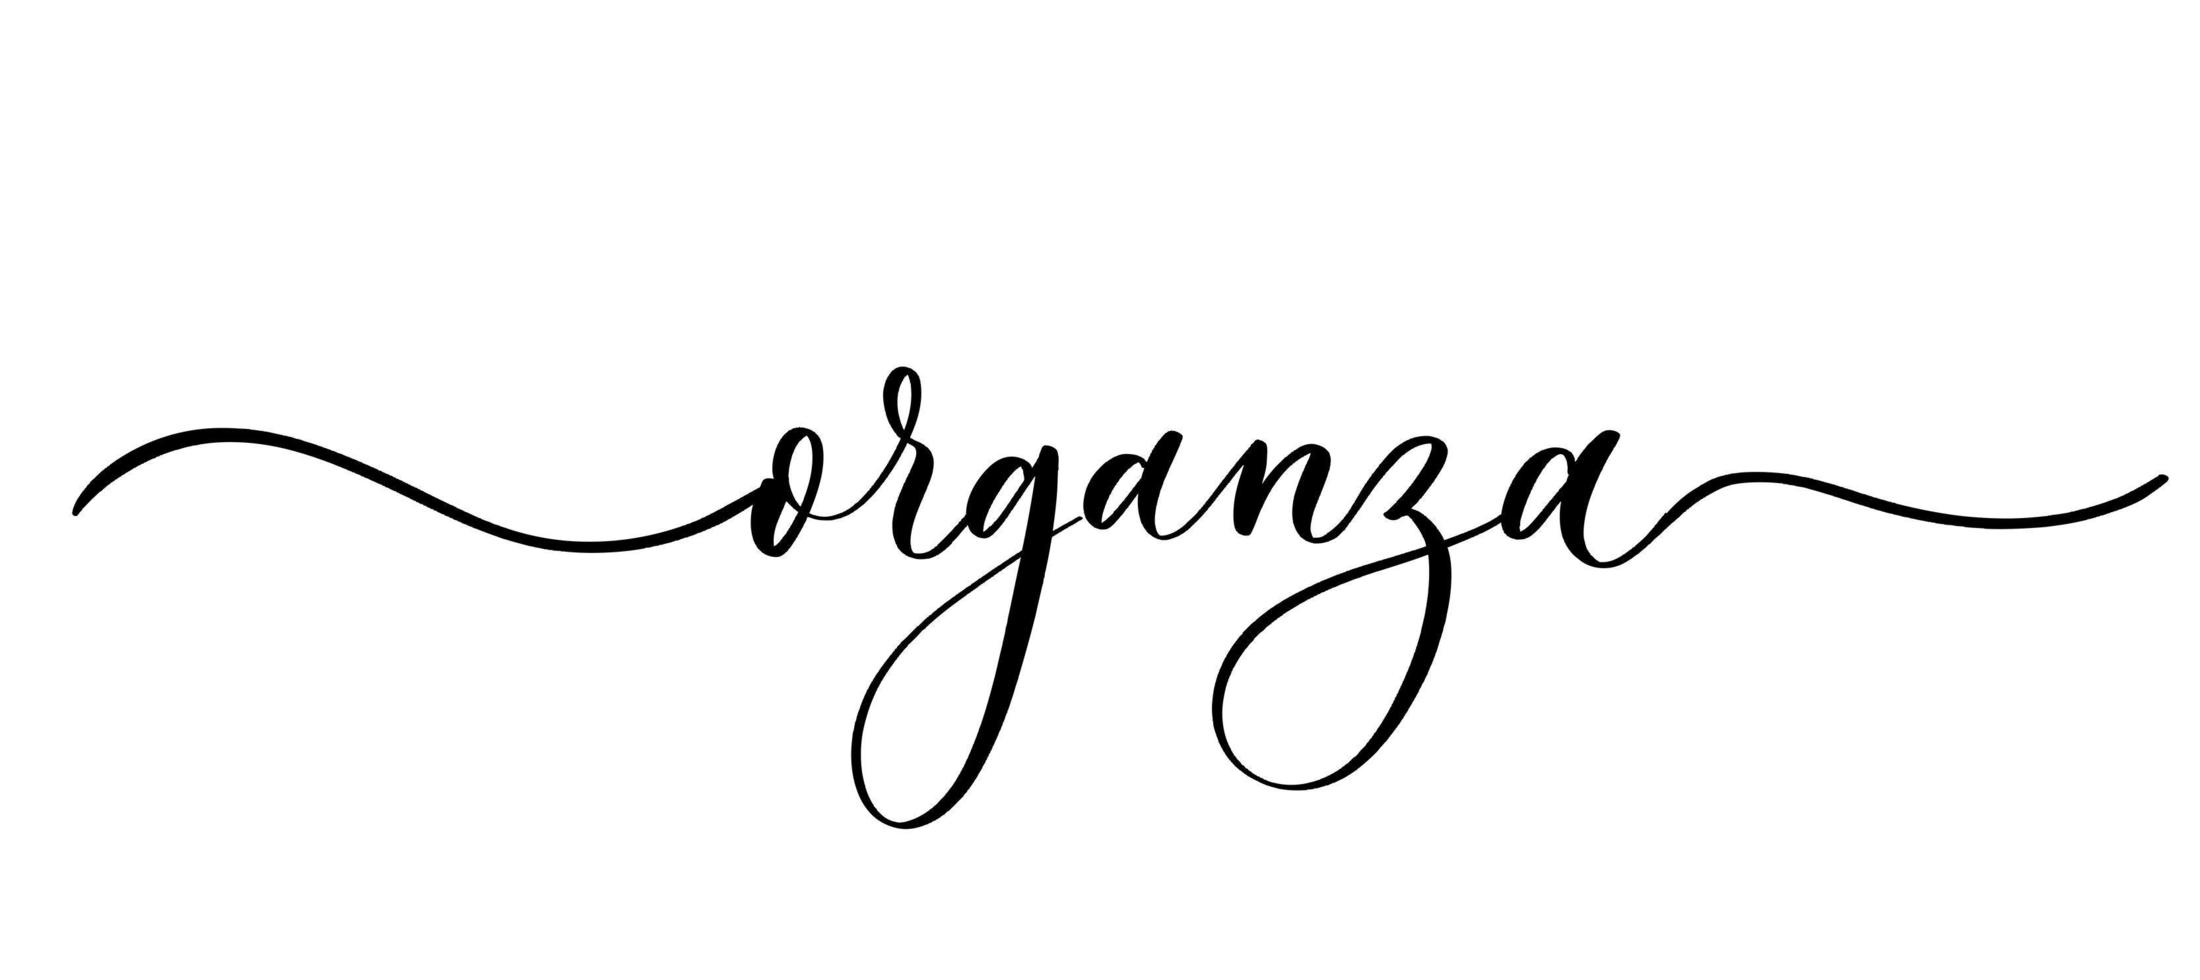 organza - vektor kalligrafisk inskription med släta linjer för butikstyg och stickning, logotyp, textil.